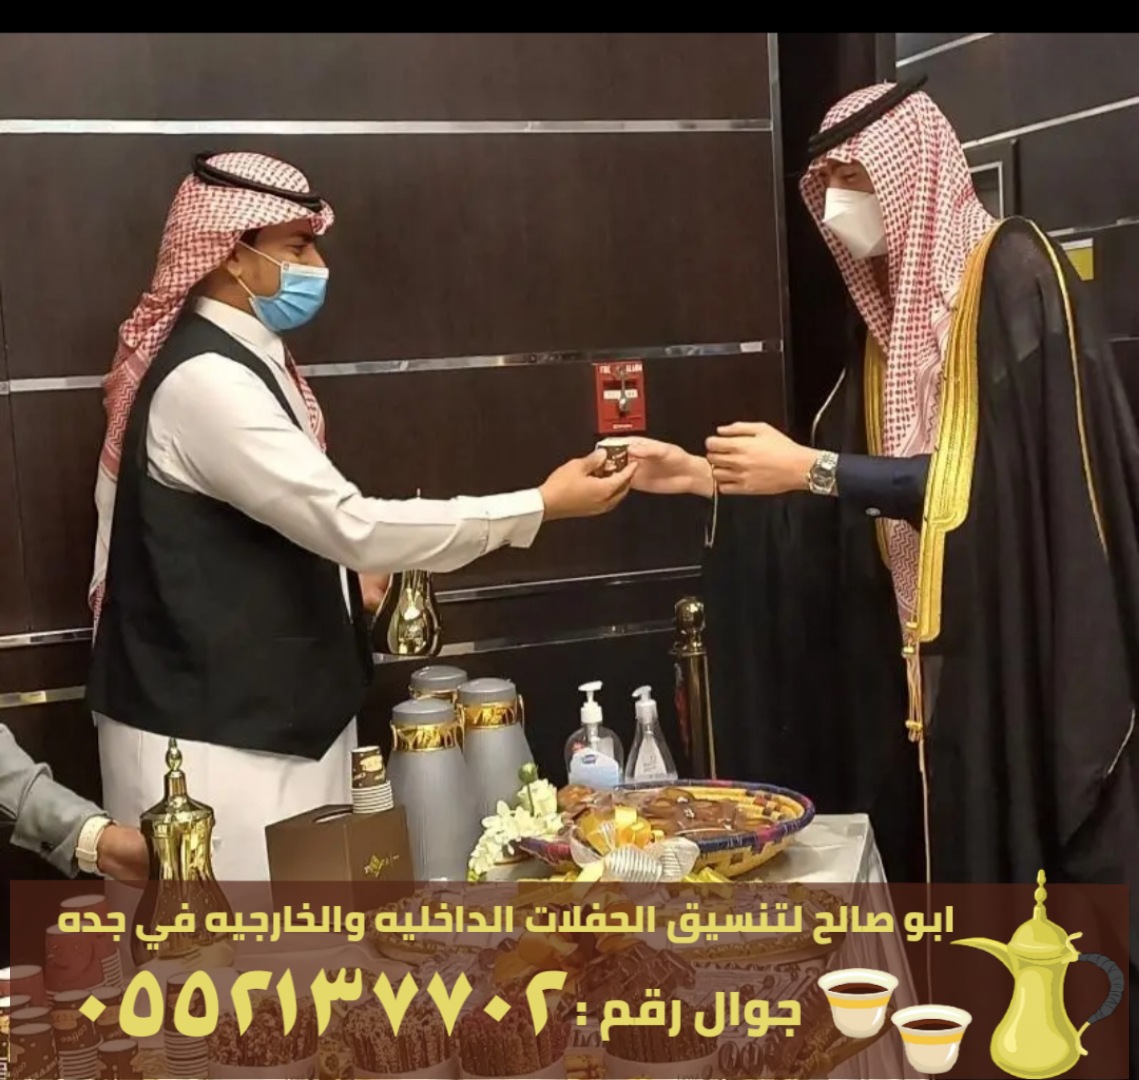 صبابين ومباشرين قهوة في جدة , 0552137702 P_2371gqxnp7